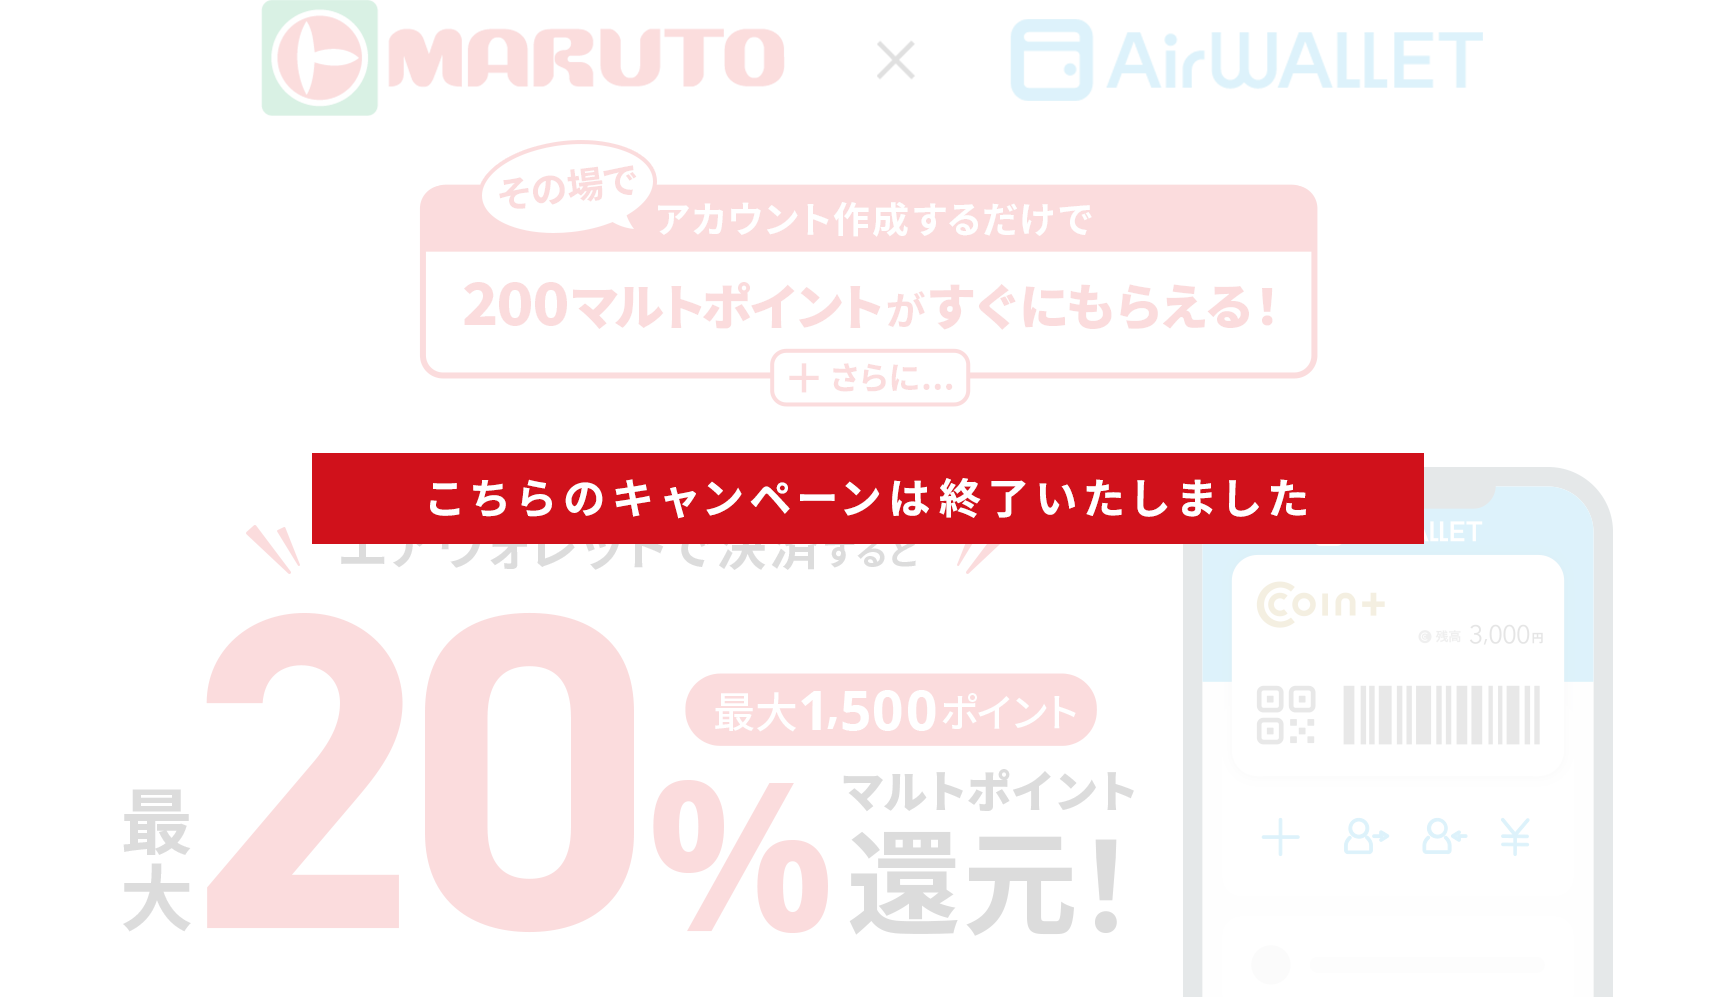 MARUTO X Airwallet アカウント作成するだけで 200マルトポイントがすぐにもらえる！マルトカードを提示して エアウォレットで決済すると 最大 20% 最大1,500ポイント マルトポイント還元！